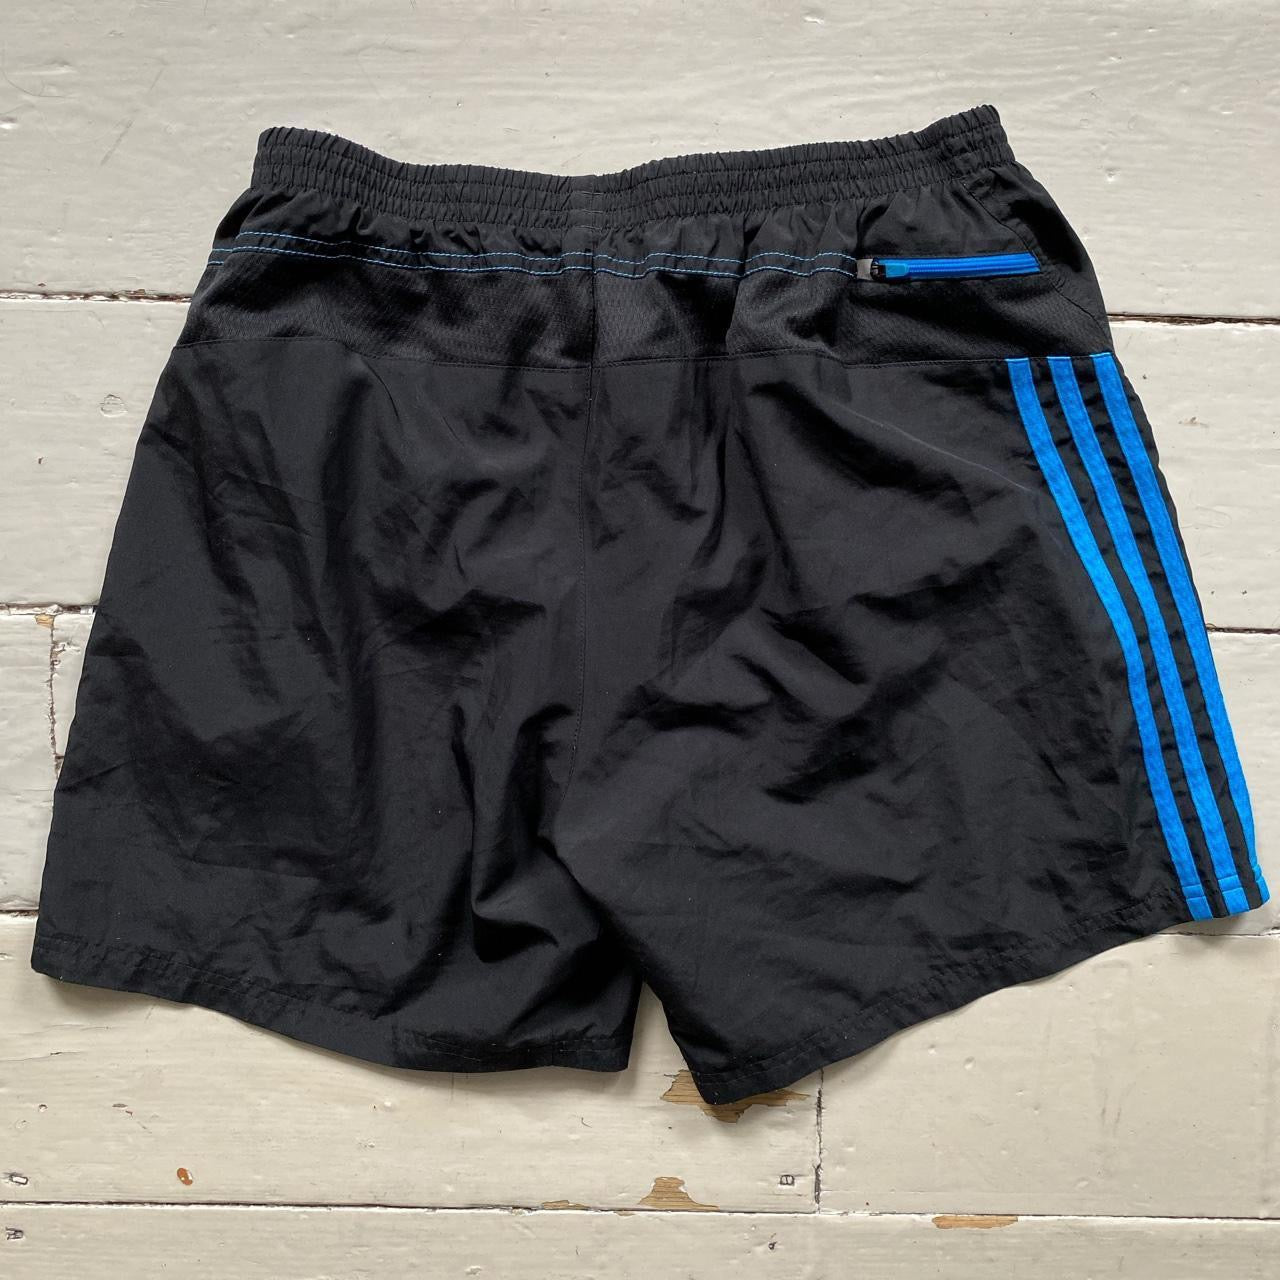 Adidas Black and Blue Shorts (Large)